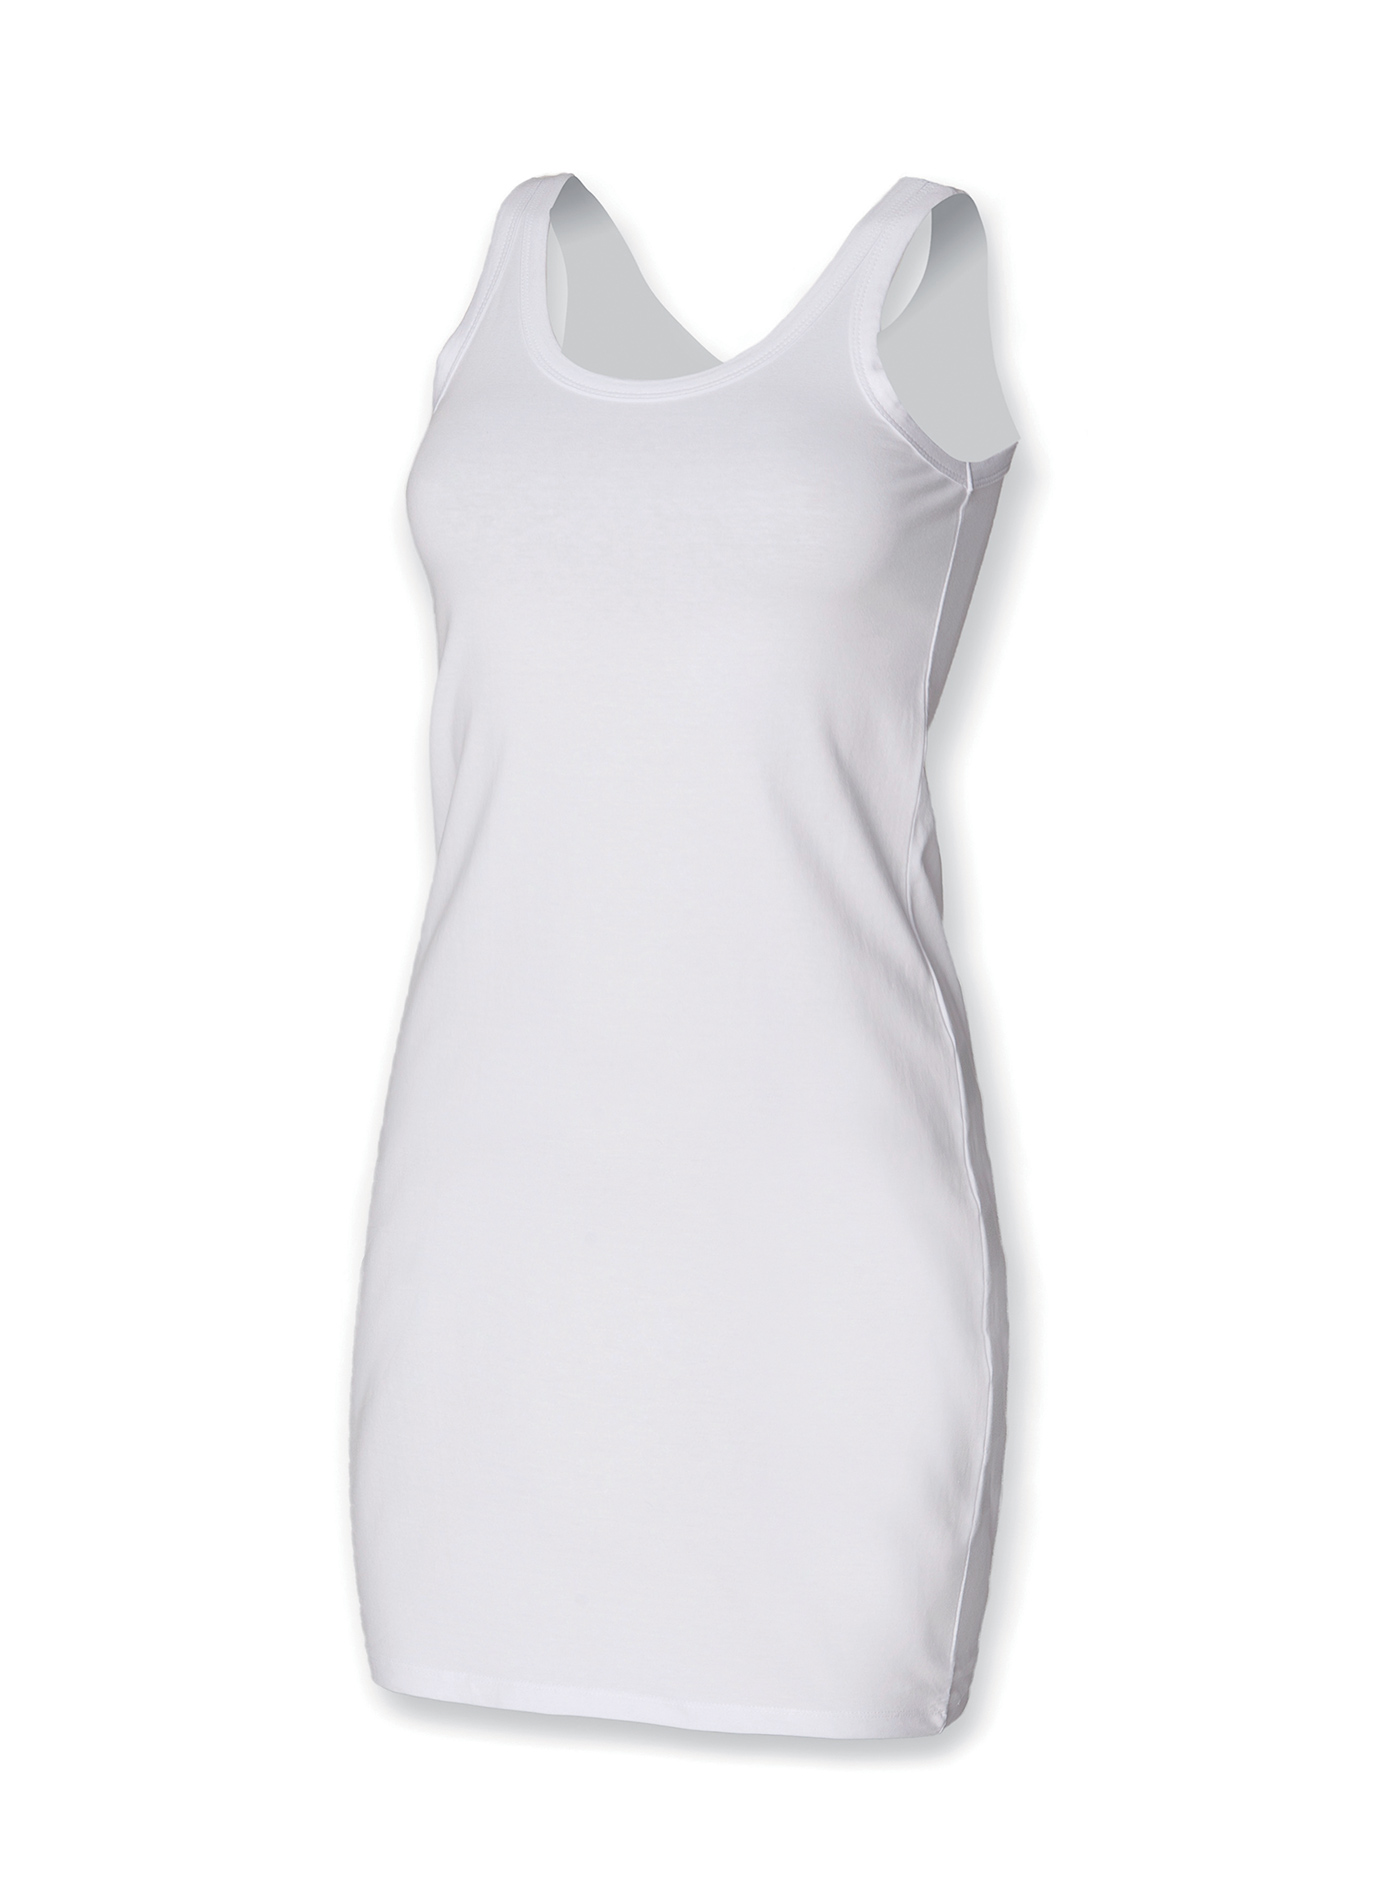 Dámské strečové šaty Skinnifit - Bílá S